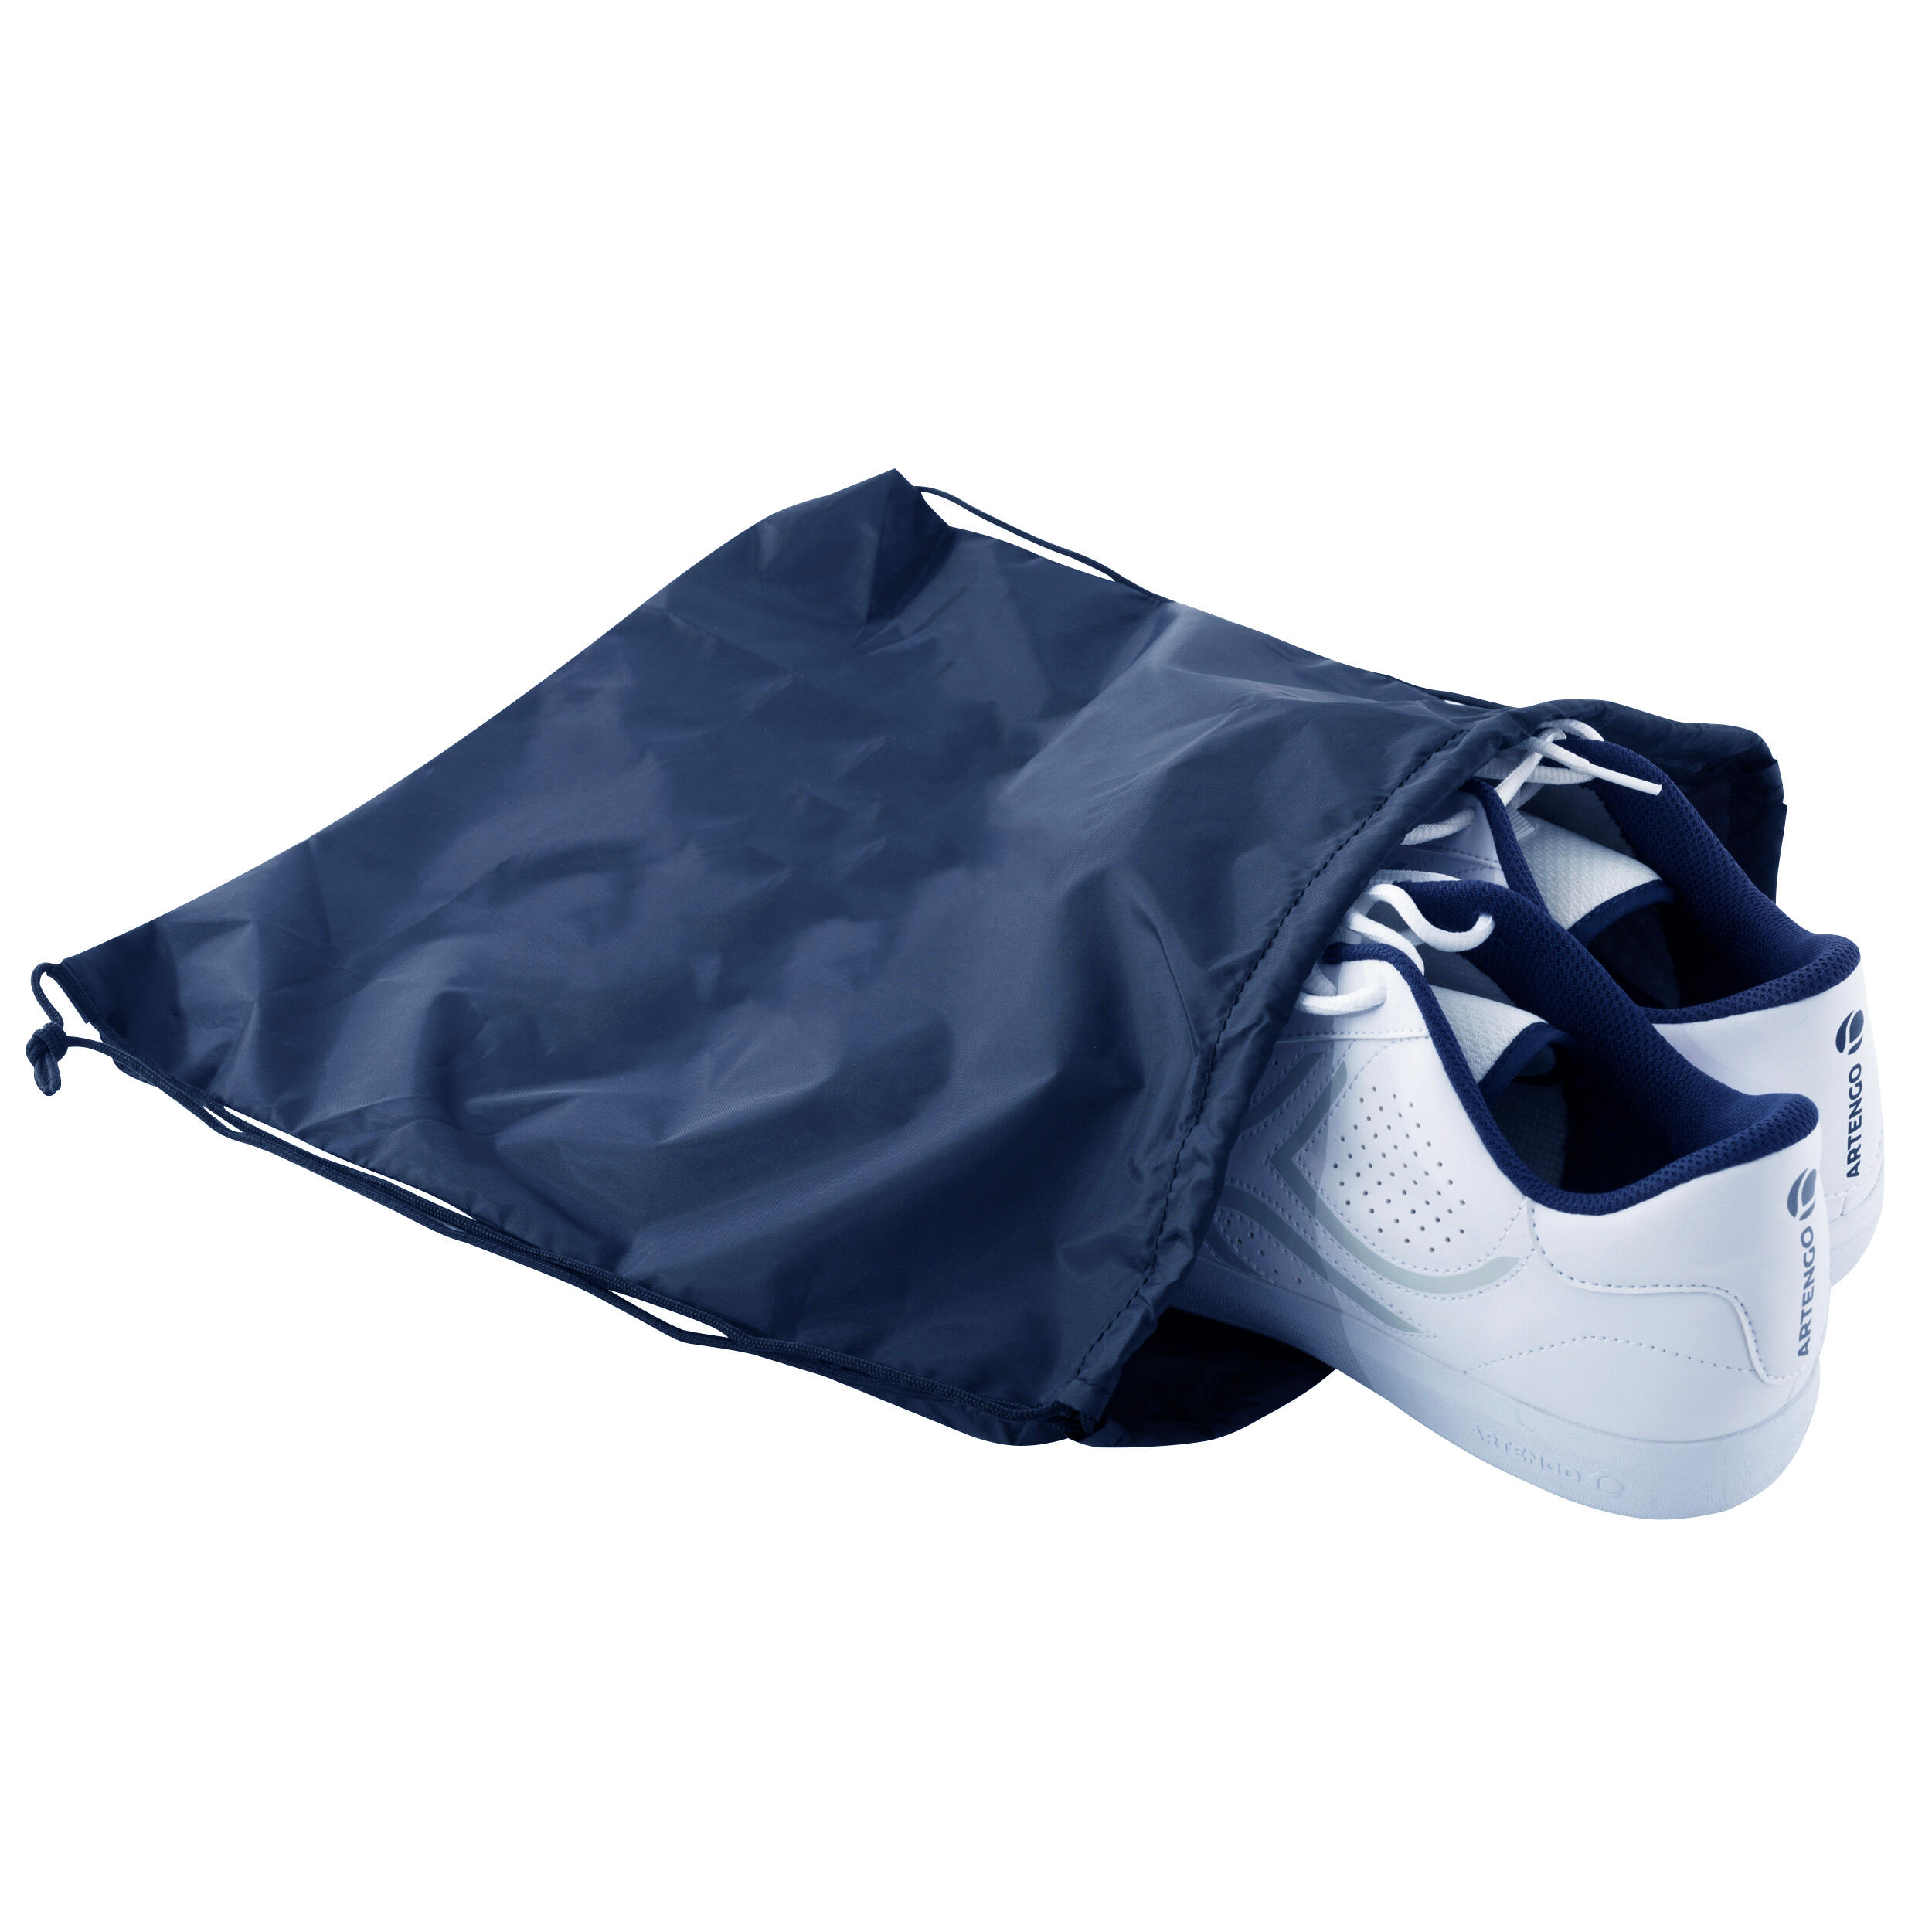 Shoe Bag - Navy Blue 2/5